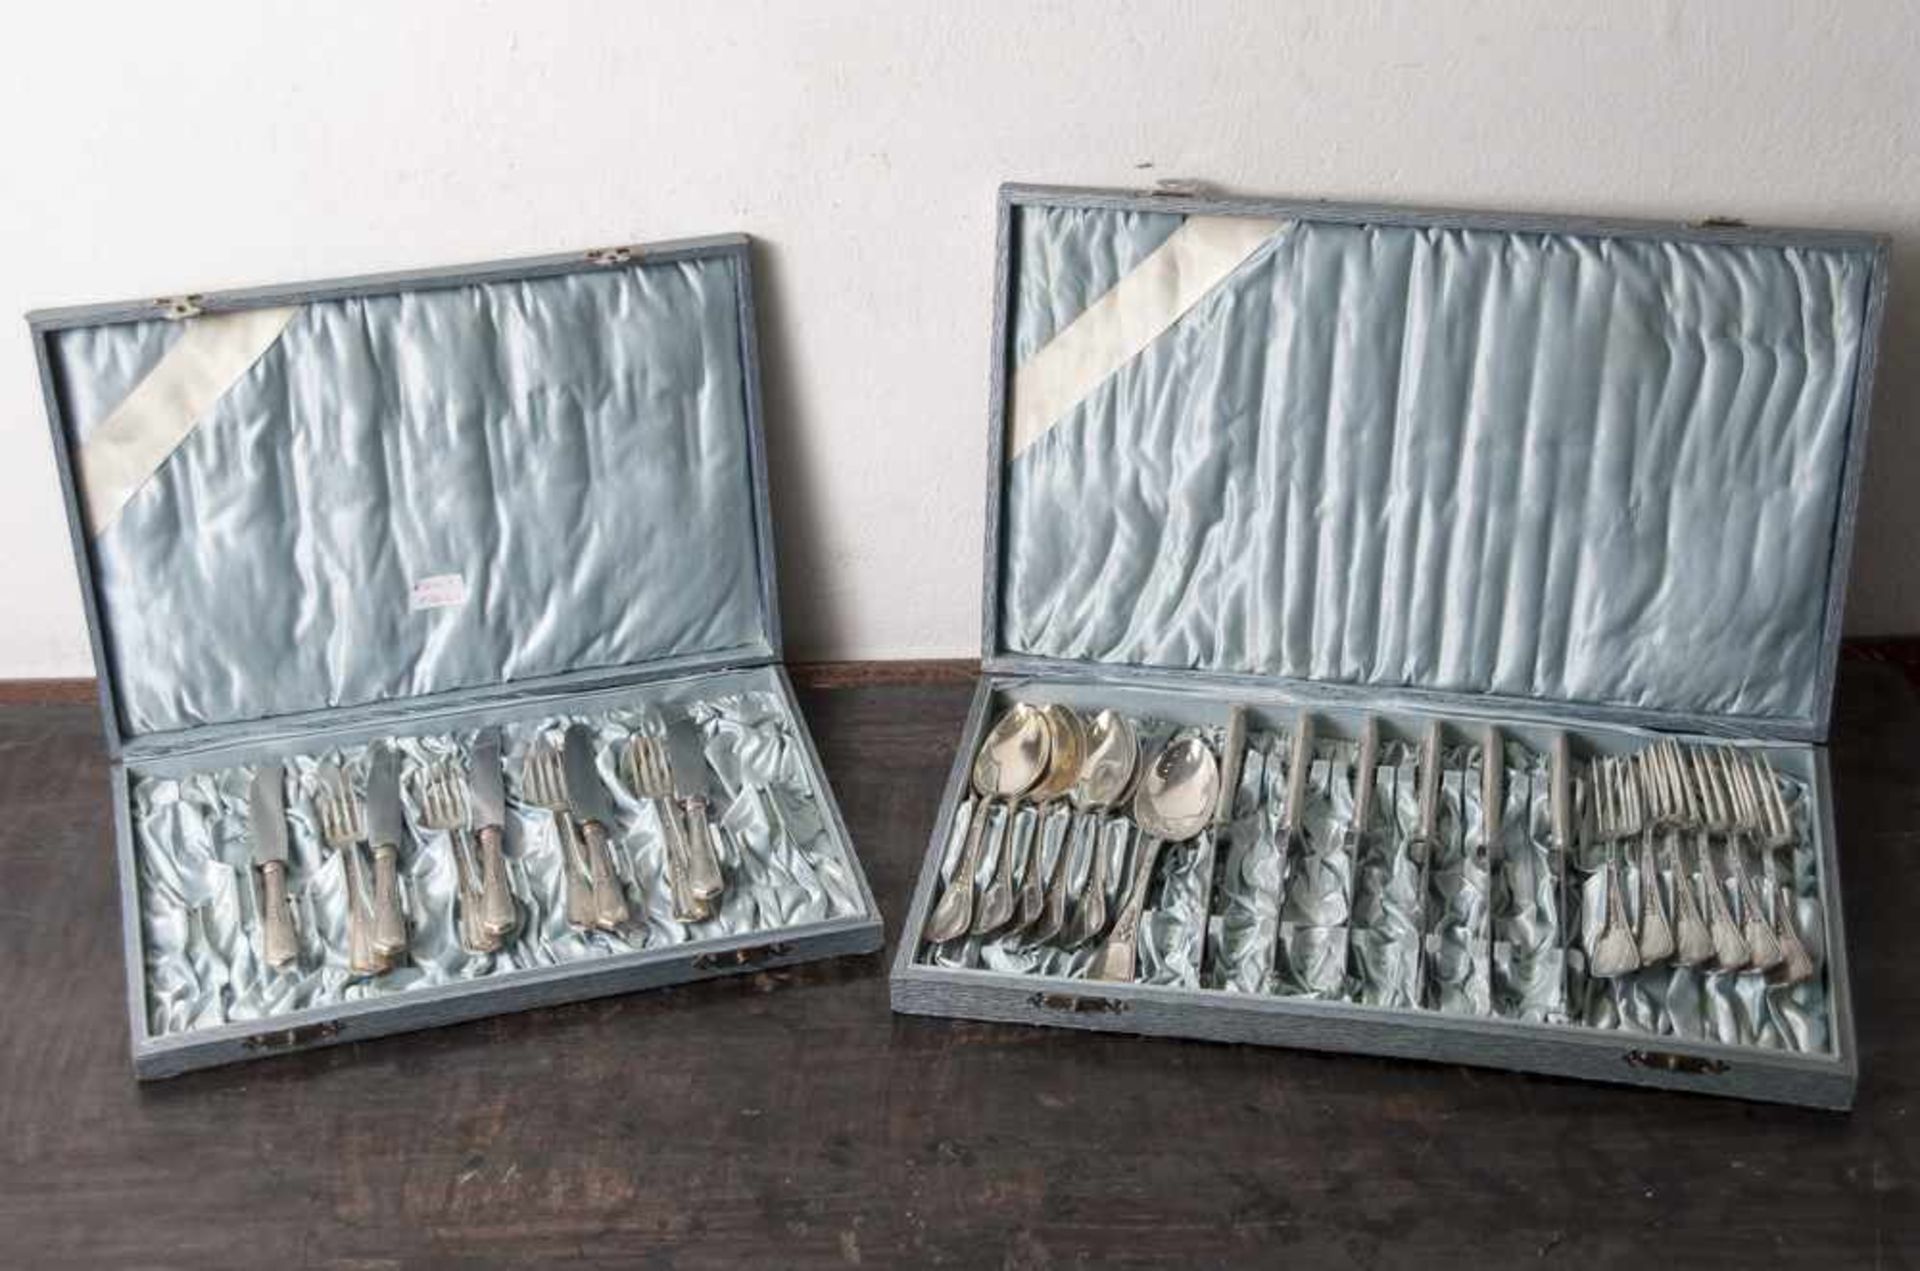 Konvolut Essbesteckteile, Silber, Punze 800, bestehend aus: 4 mittleren Gabeln, 6 großen Gabeln, 6